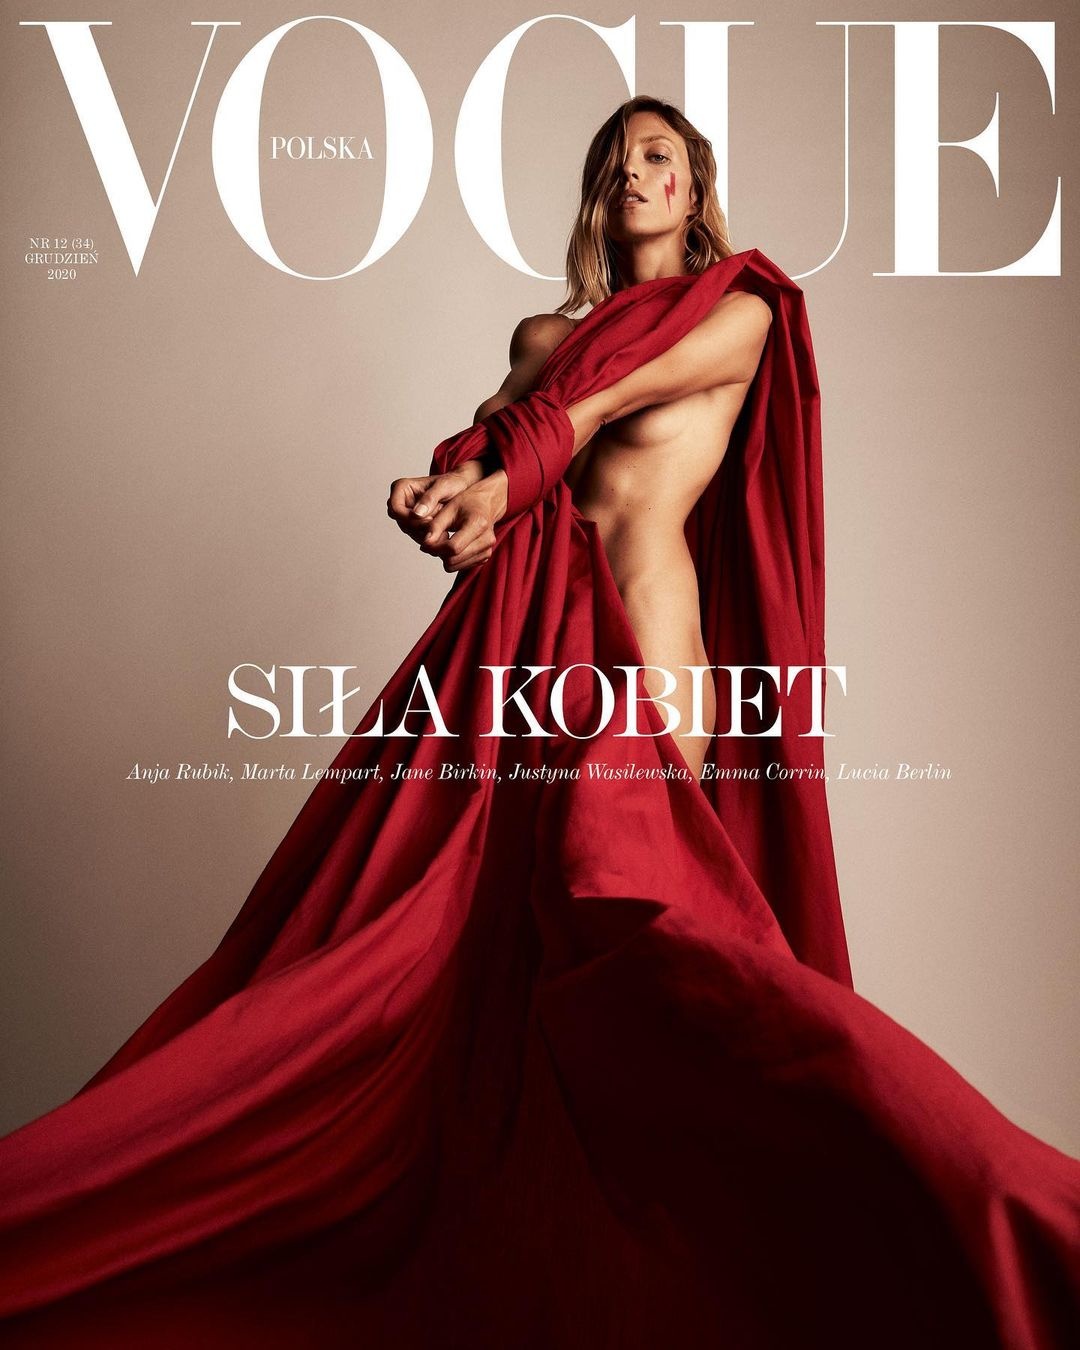 Vogue Poland December 2020 Cover Story Editorial